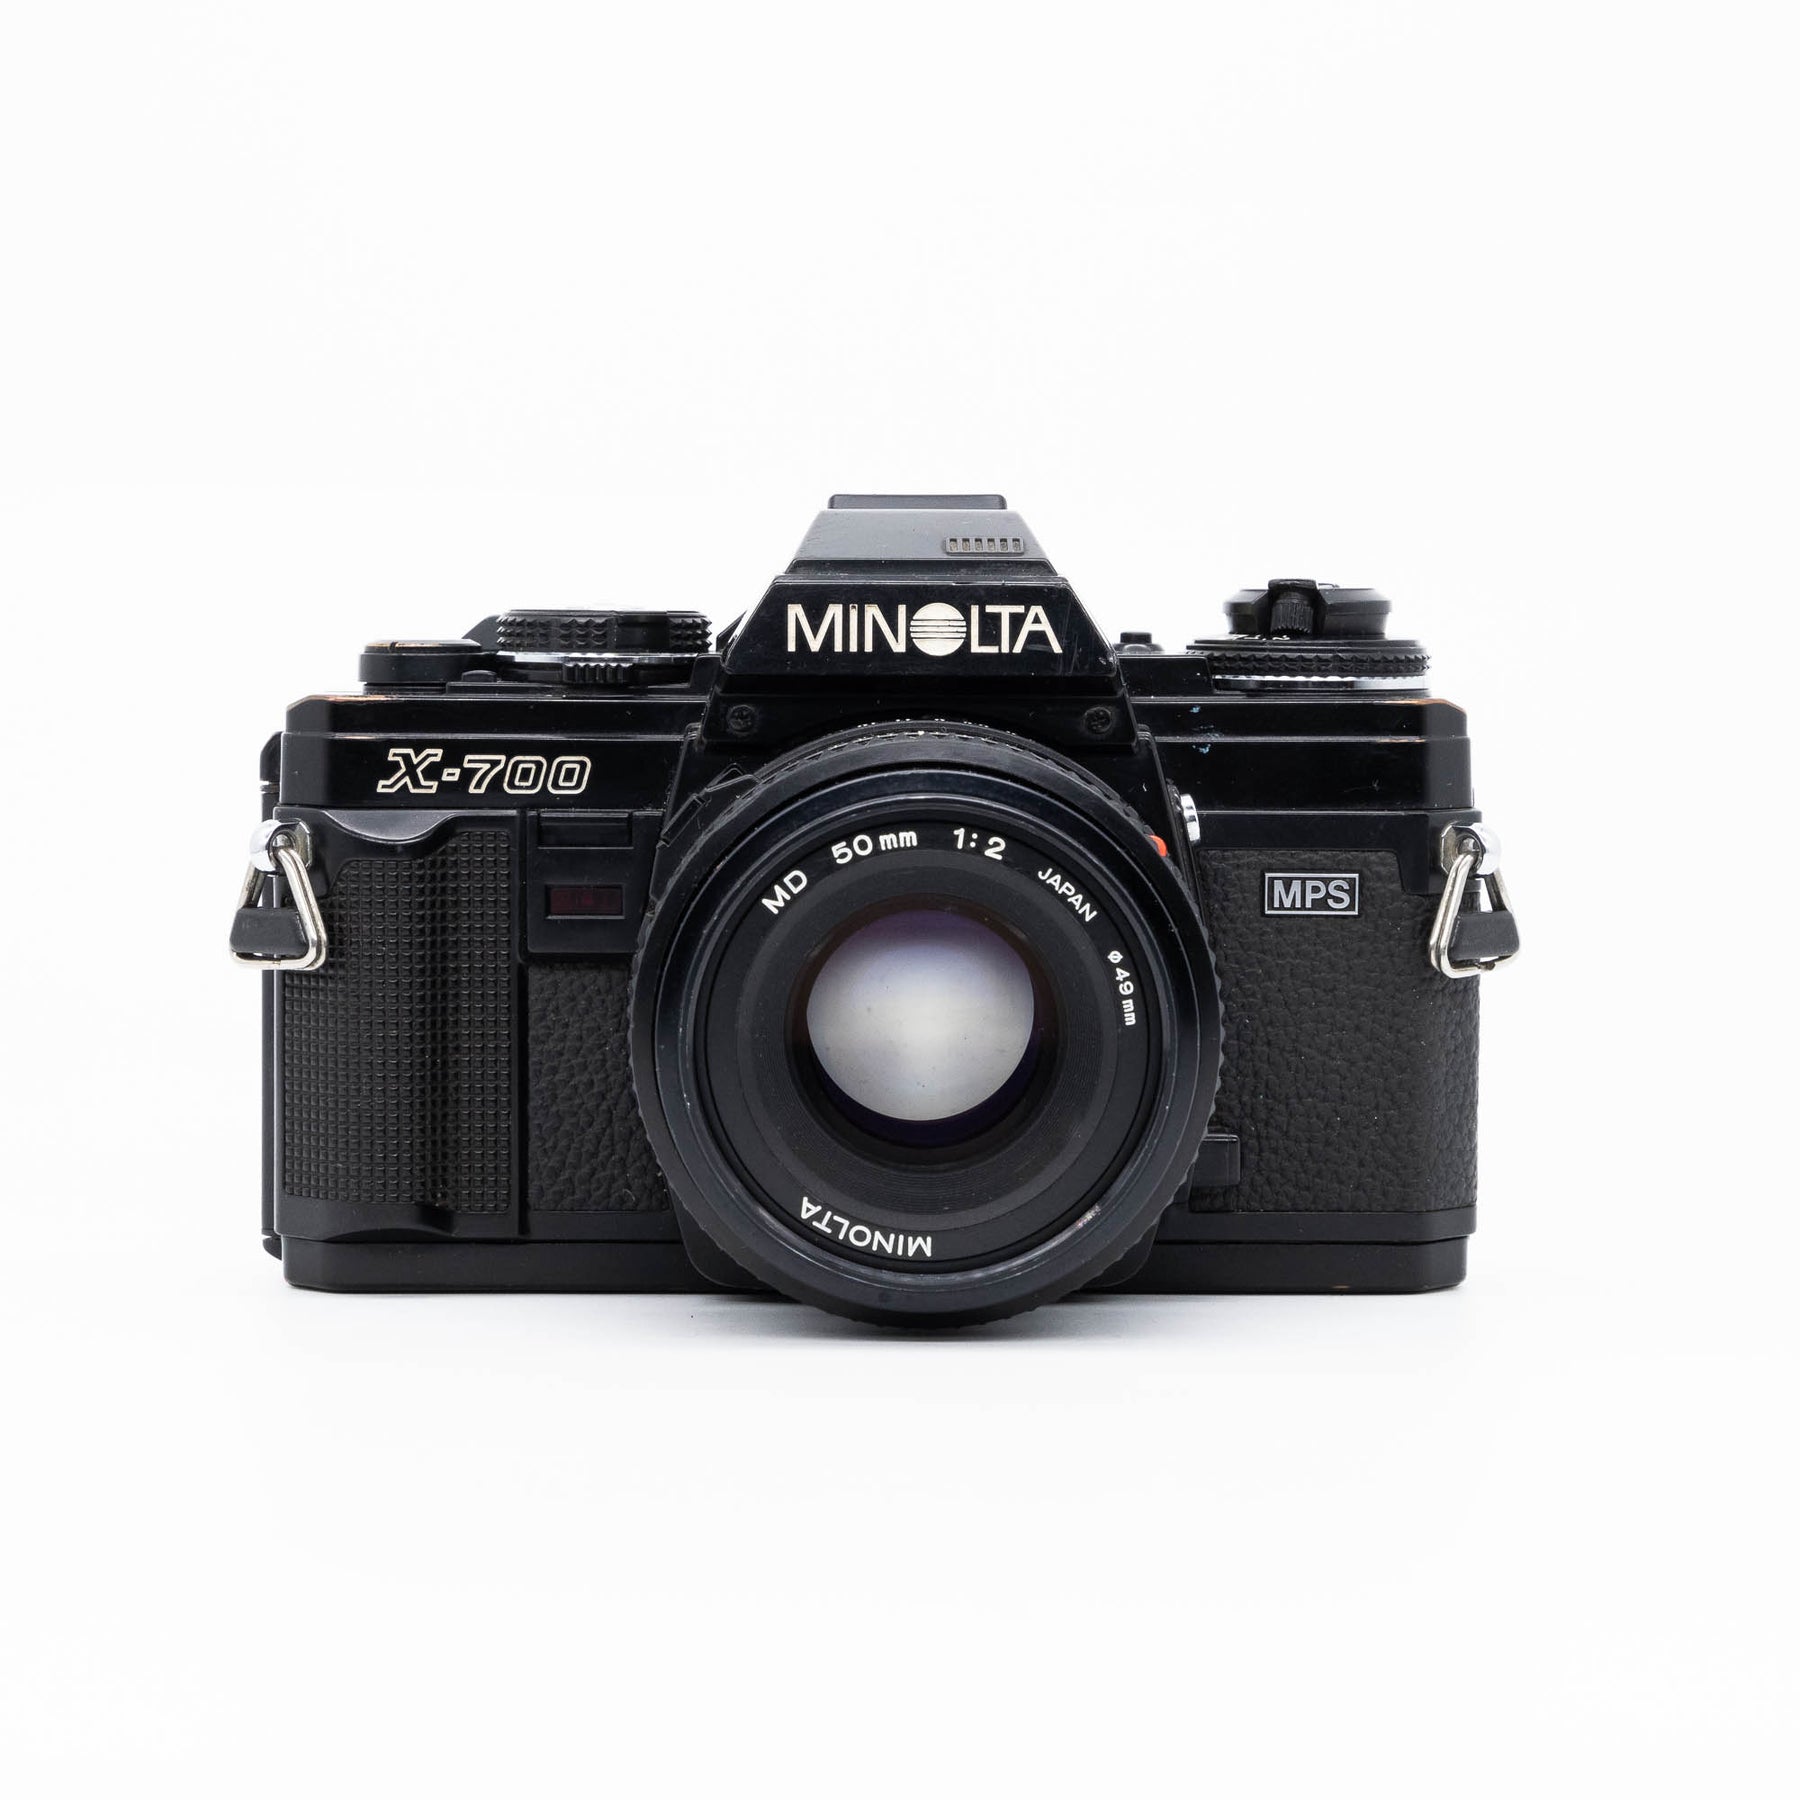 Minolta X-700 & 50 mm f/2.0